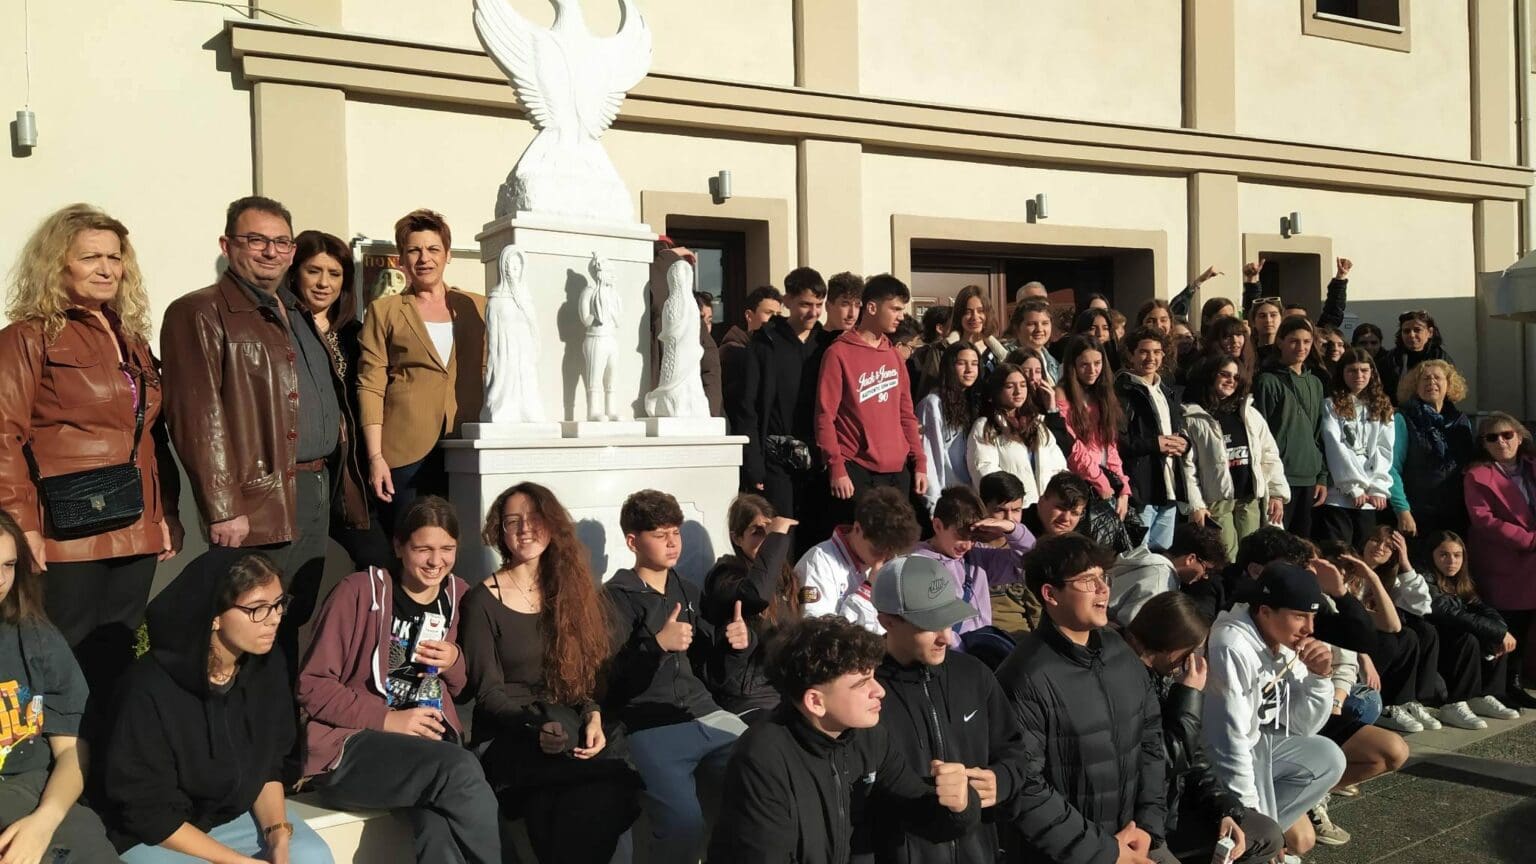 Τον Ποντιακό Σύλλογο Πτολεμαΐδας επισκέφθηκαν μαθητές και καθηγητές του 7ου Γυμνασίου Κέρκυρας! (φωτογραφίες)